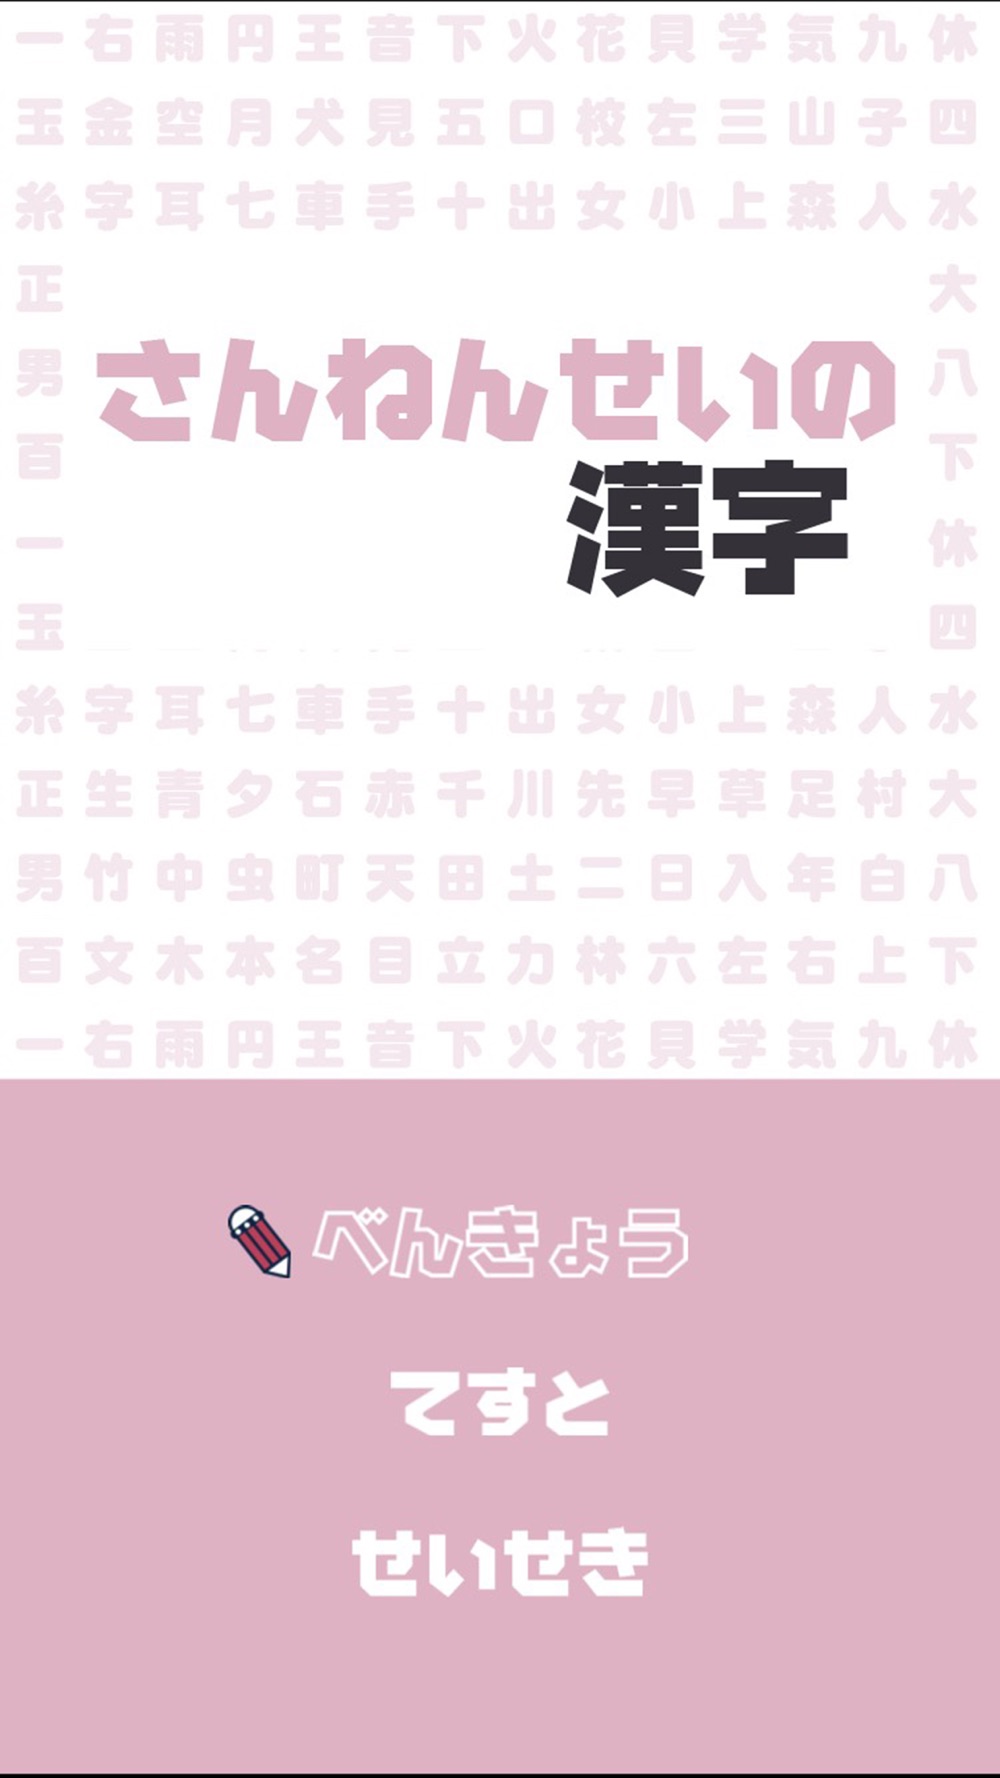 さんねんせいの漢字 小学三年生 小3 向け漢字勉強アプリ Free Download App For Iphone Steprimo Com